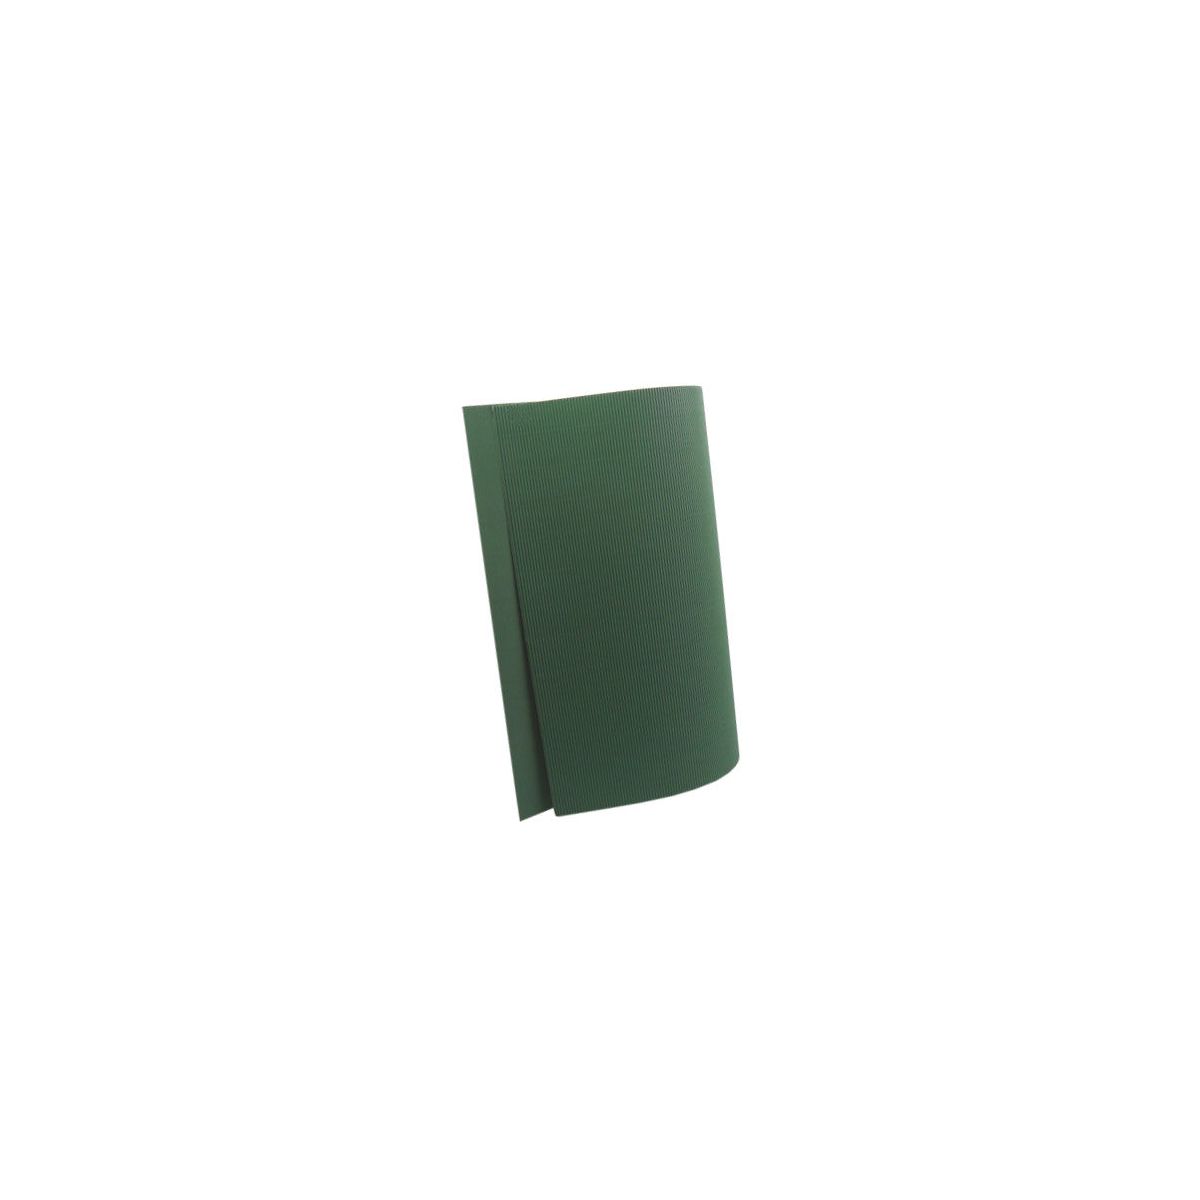 Karton falisty zielony Zielony [mm:] 500x700 Titanum (740)